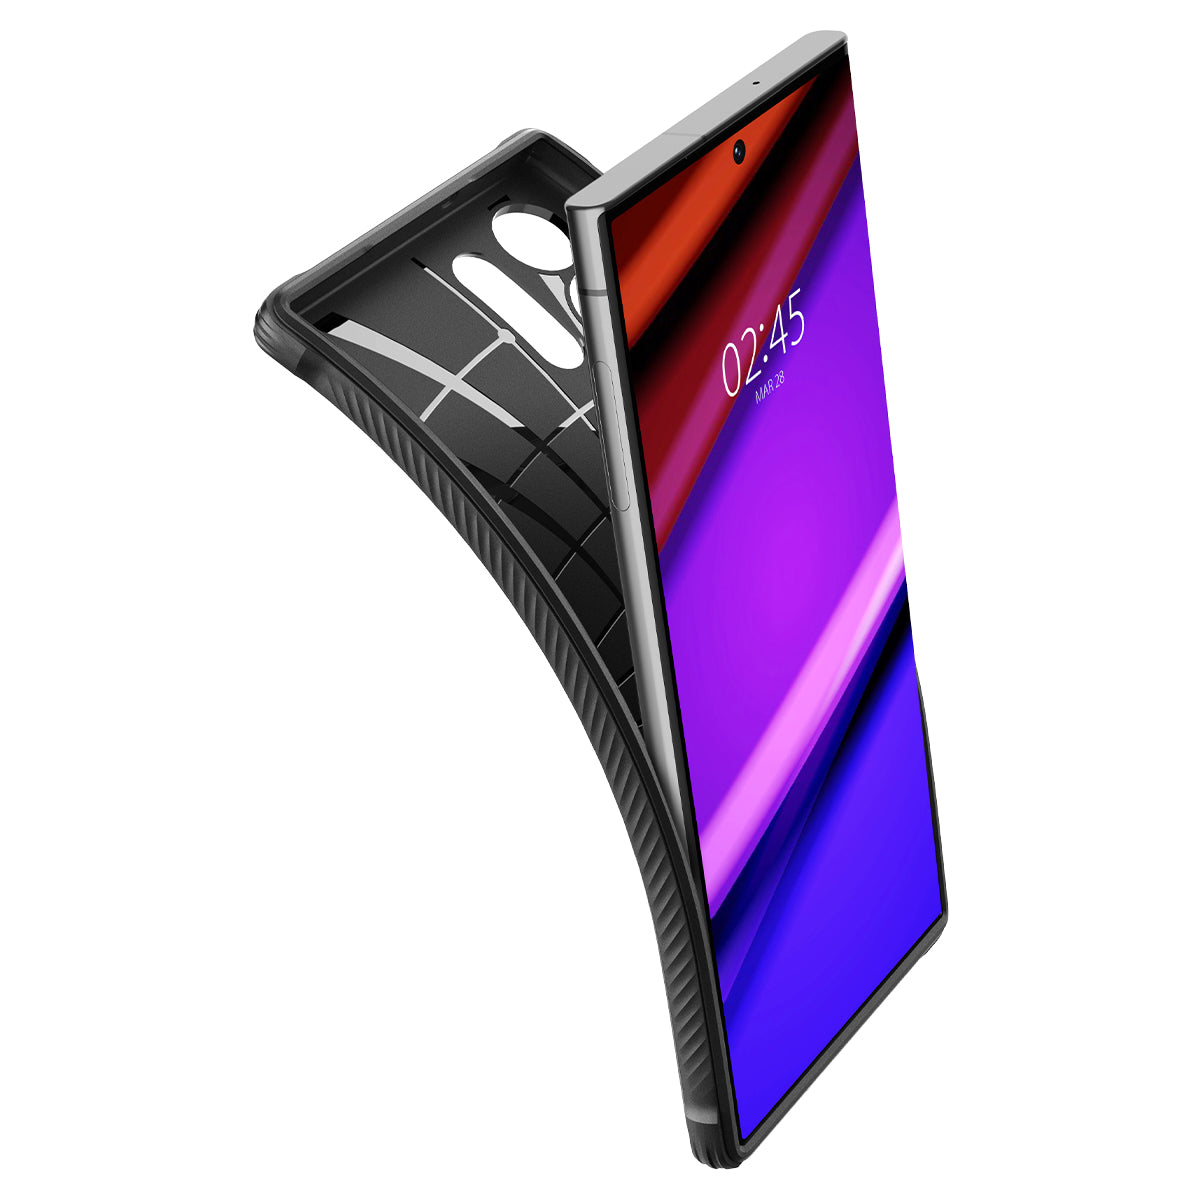 Ốp Lưng Spigen Dành Cho Samsung Galaxy S23 Ultra, Spigen Rugged Armor Matte Black - Hàng Chính Hãng